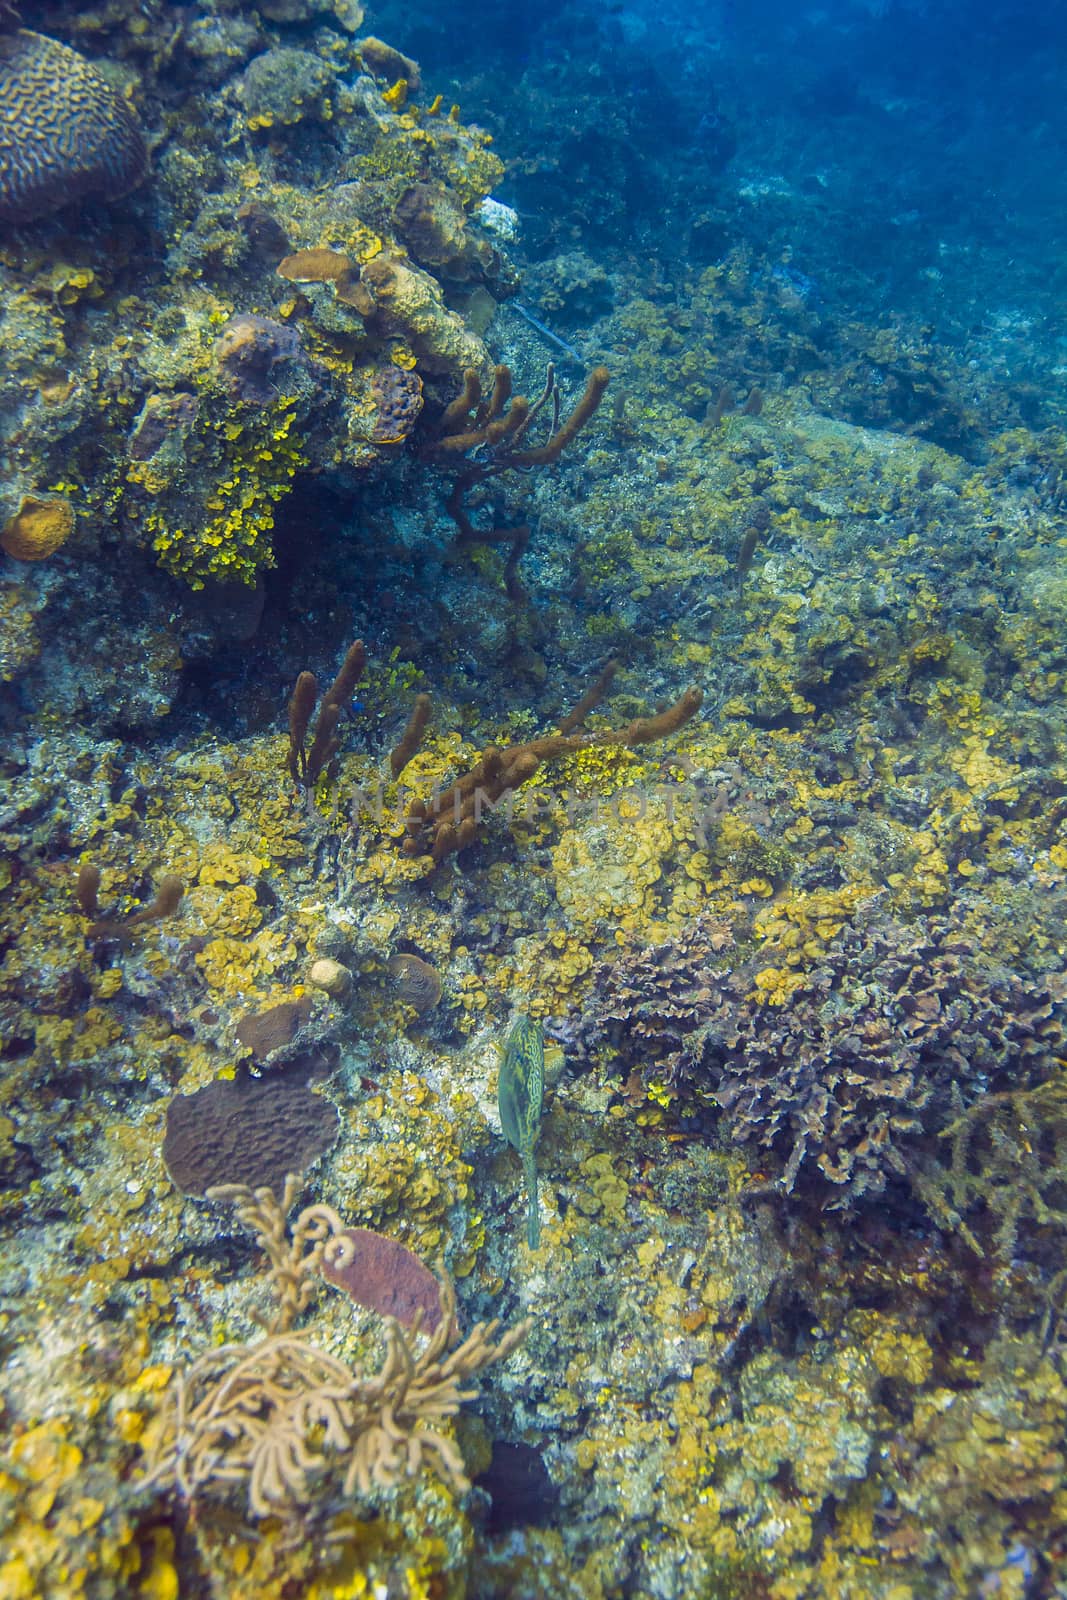 Deep ocean coral reef in the Atlantic